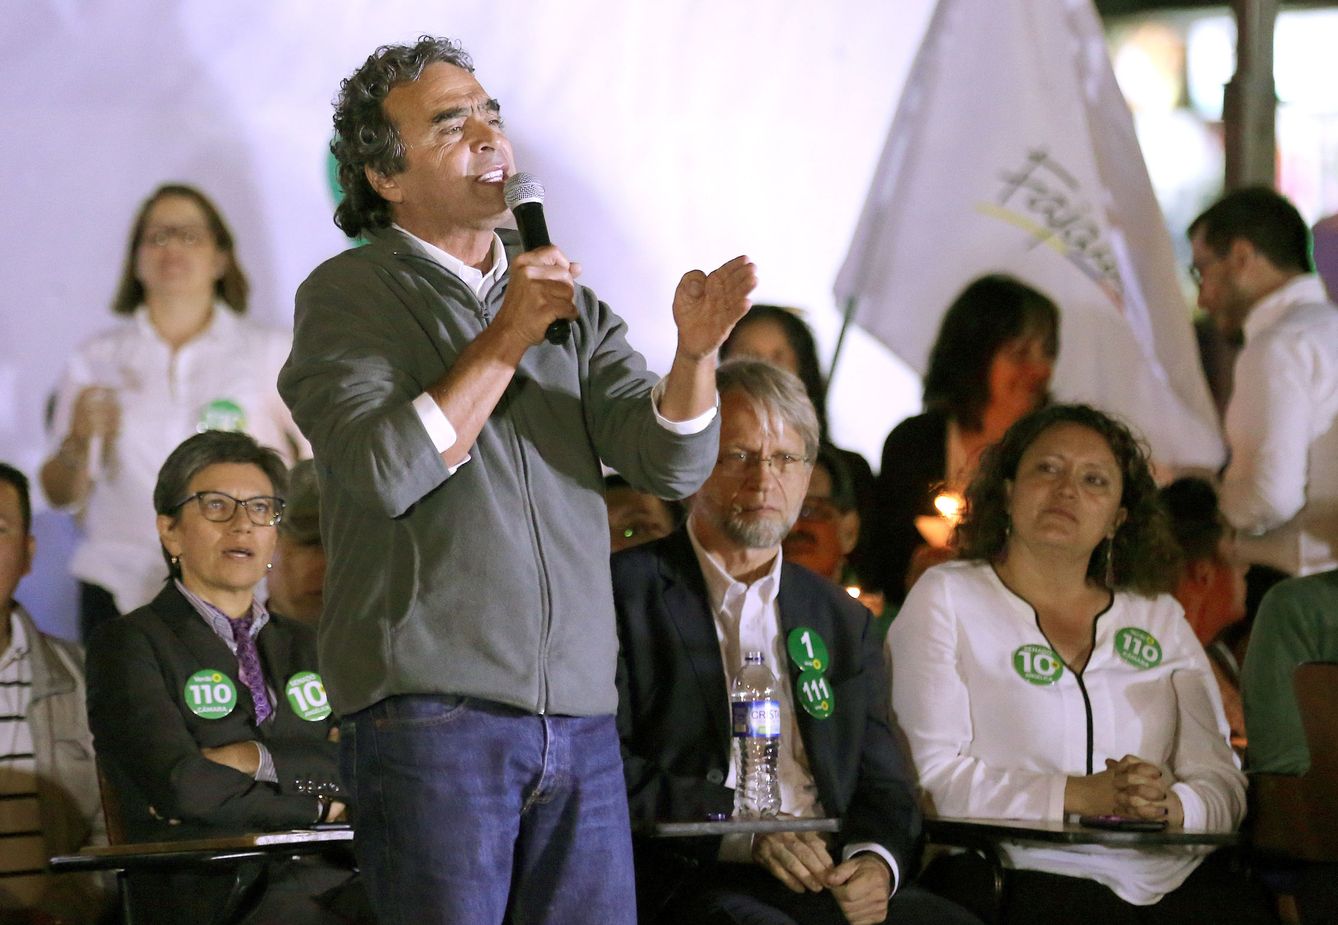 Sergio Fajardo, el otro candidato apoyado por el Polo Democrático, habla durante la presentación de los candidatos parlamentarios de su plataforma electoral en Bogotá. (EFE)